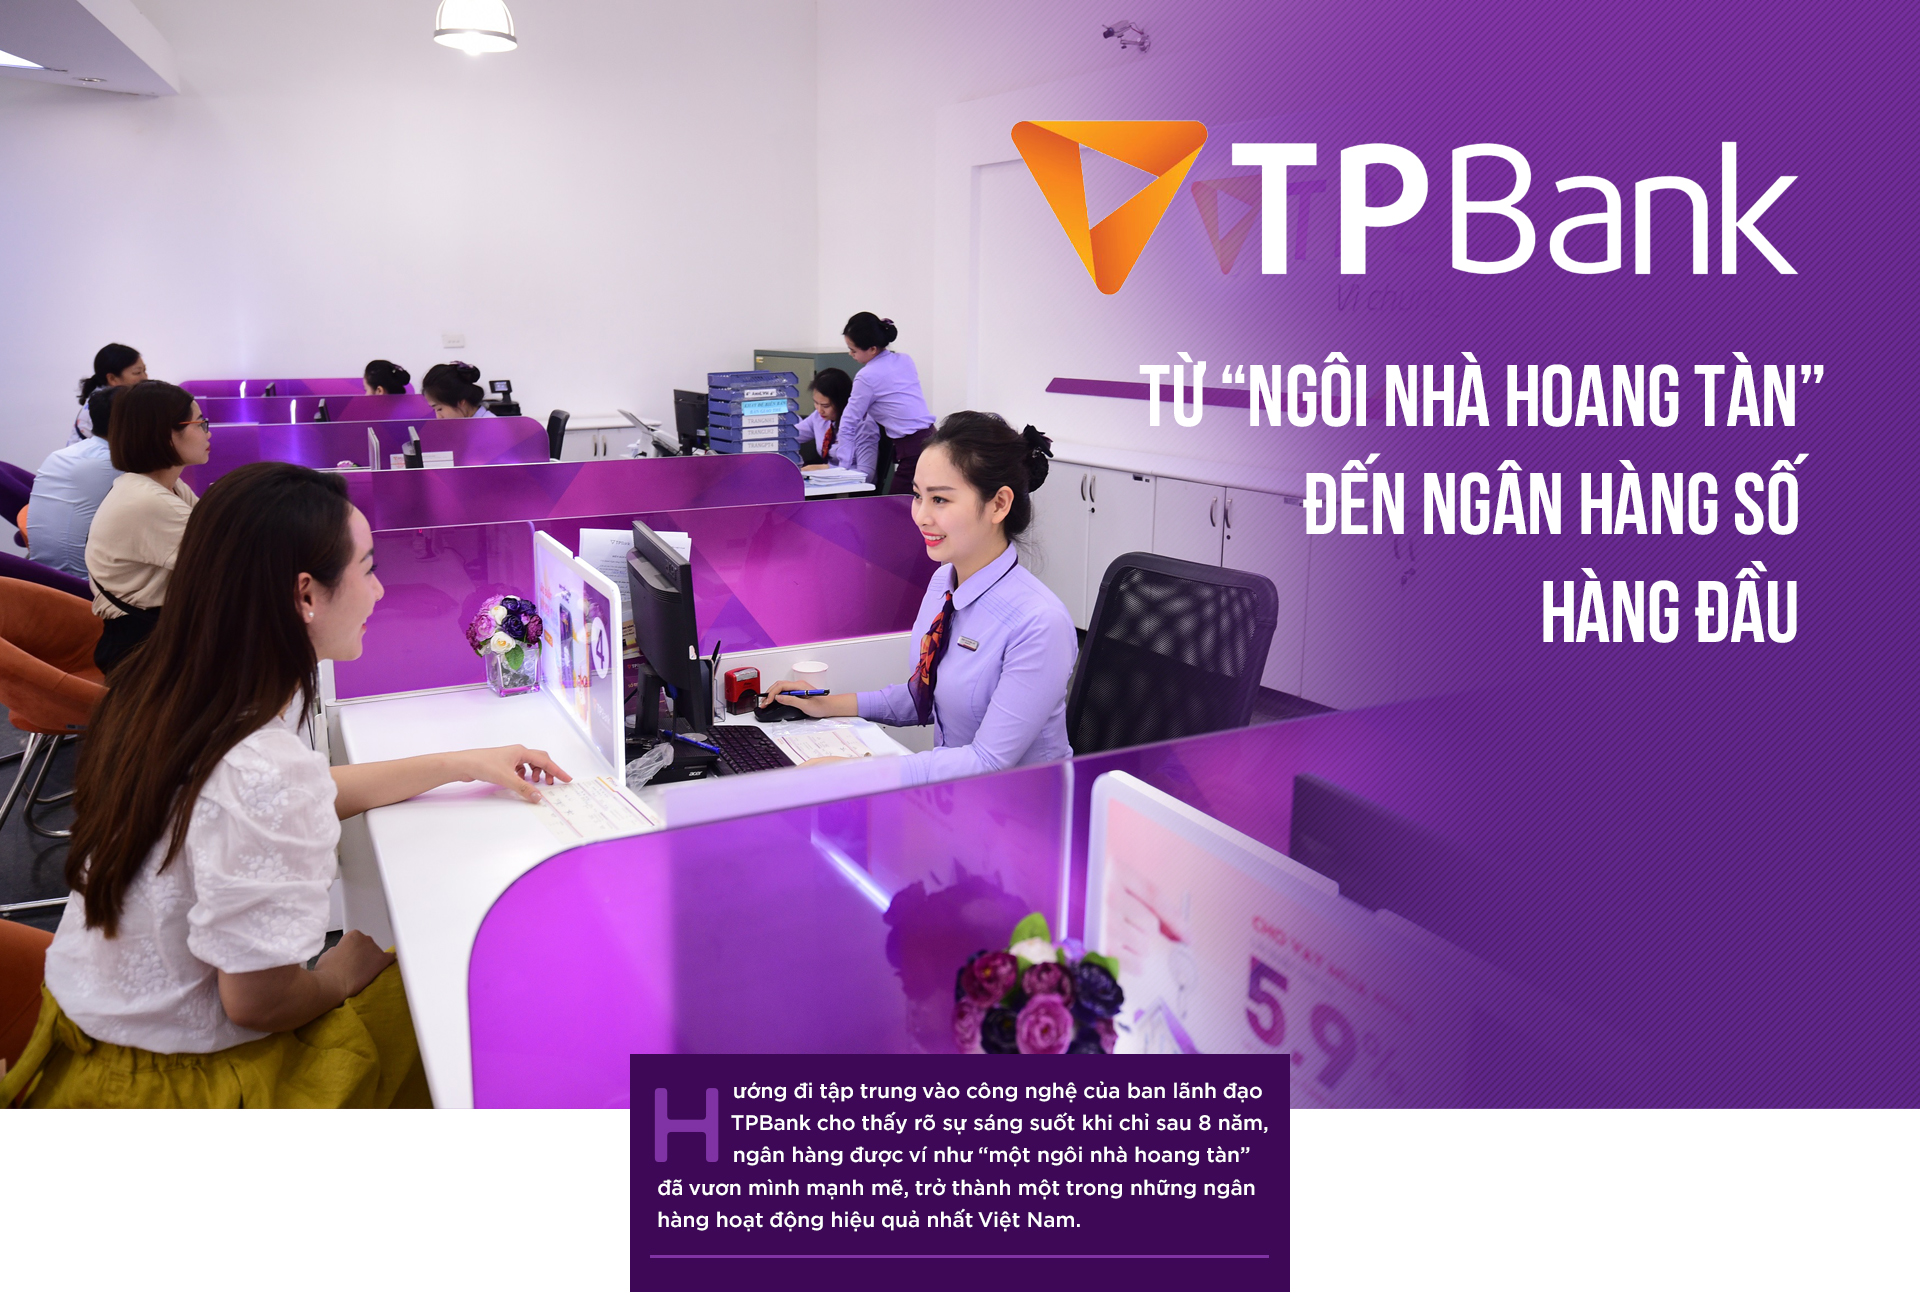 TPBank: Từ “ngôi nhà hoang tàn” đến ngân hàng số hàng đầu